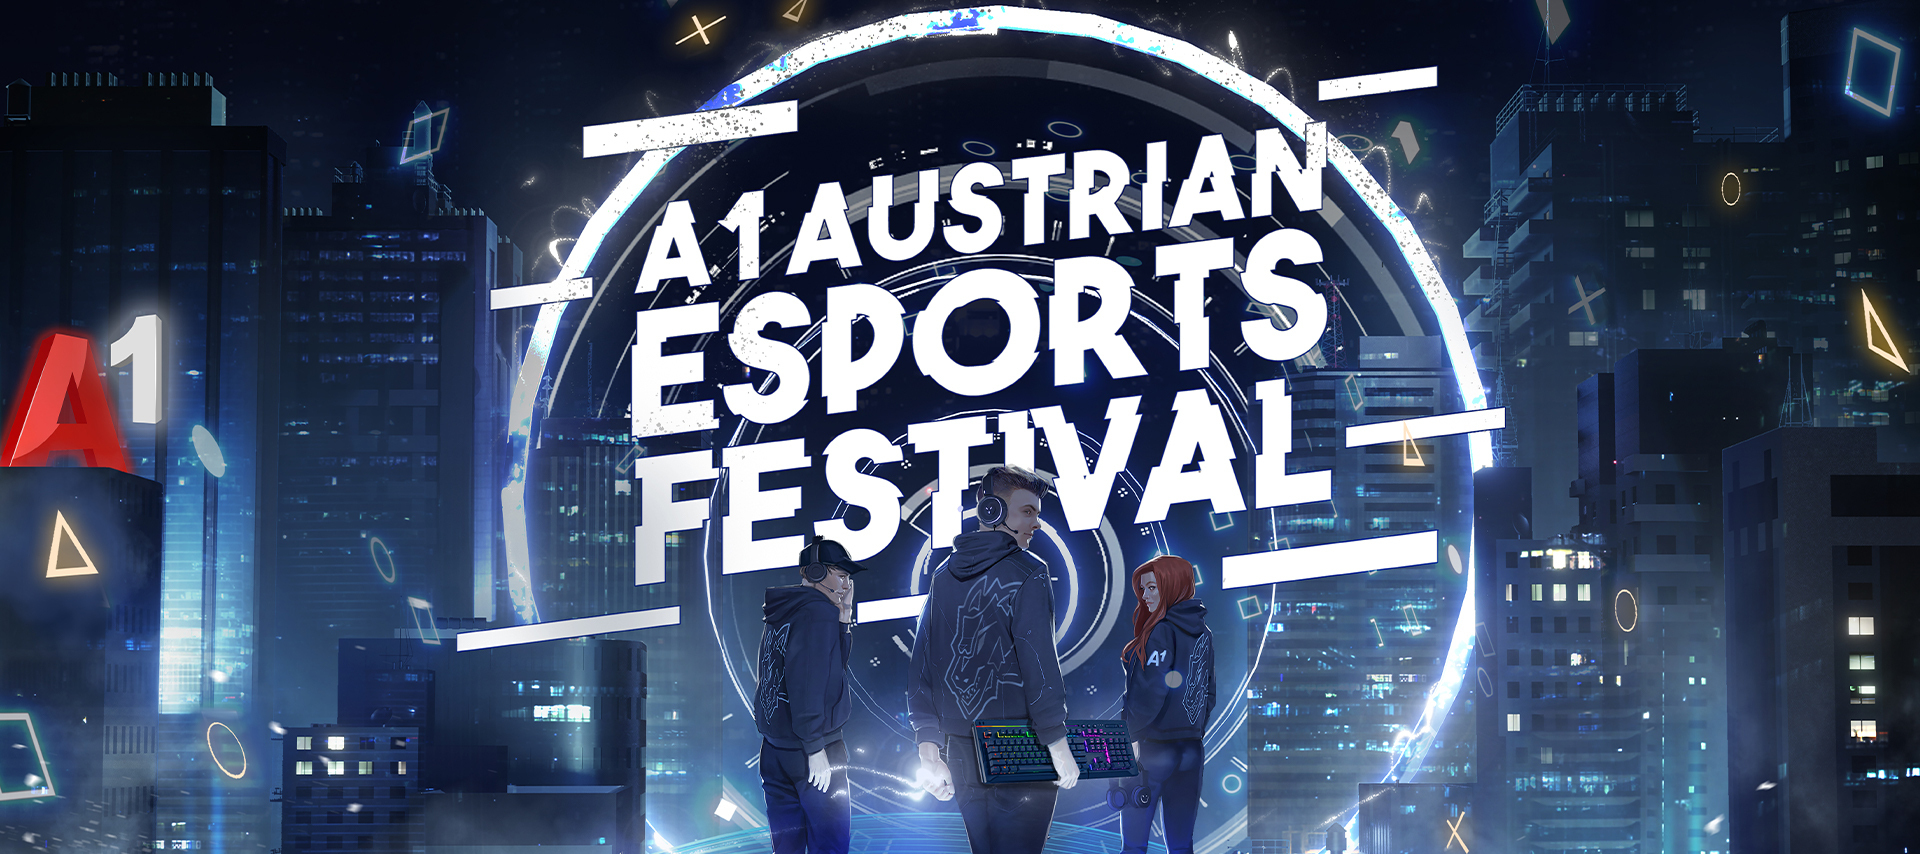 Jetzt mitmachen: Gewinne 3x2 Tickets für das A1 Austrian eSports Festival